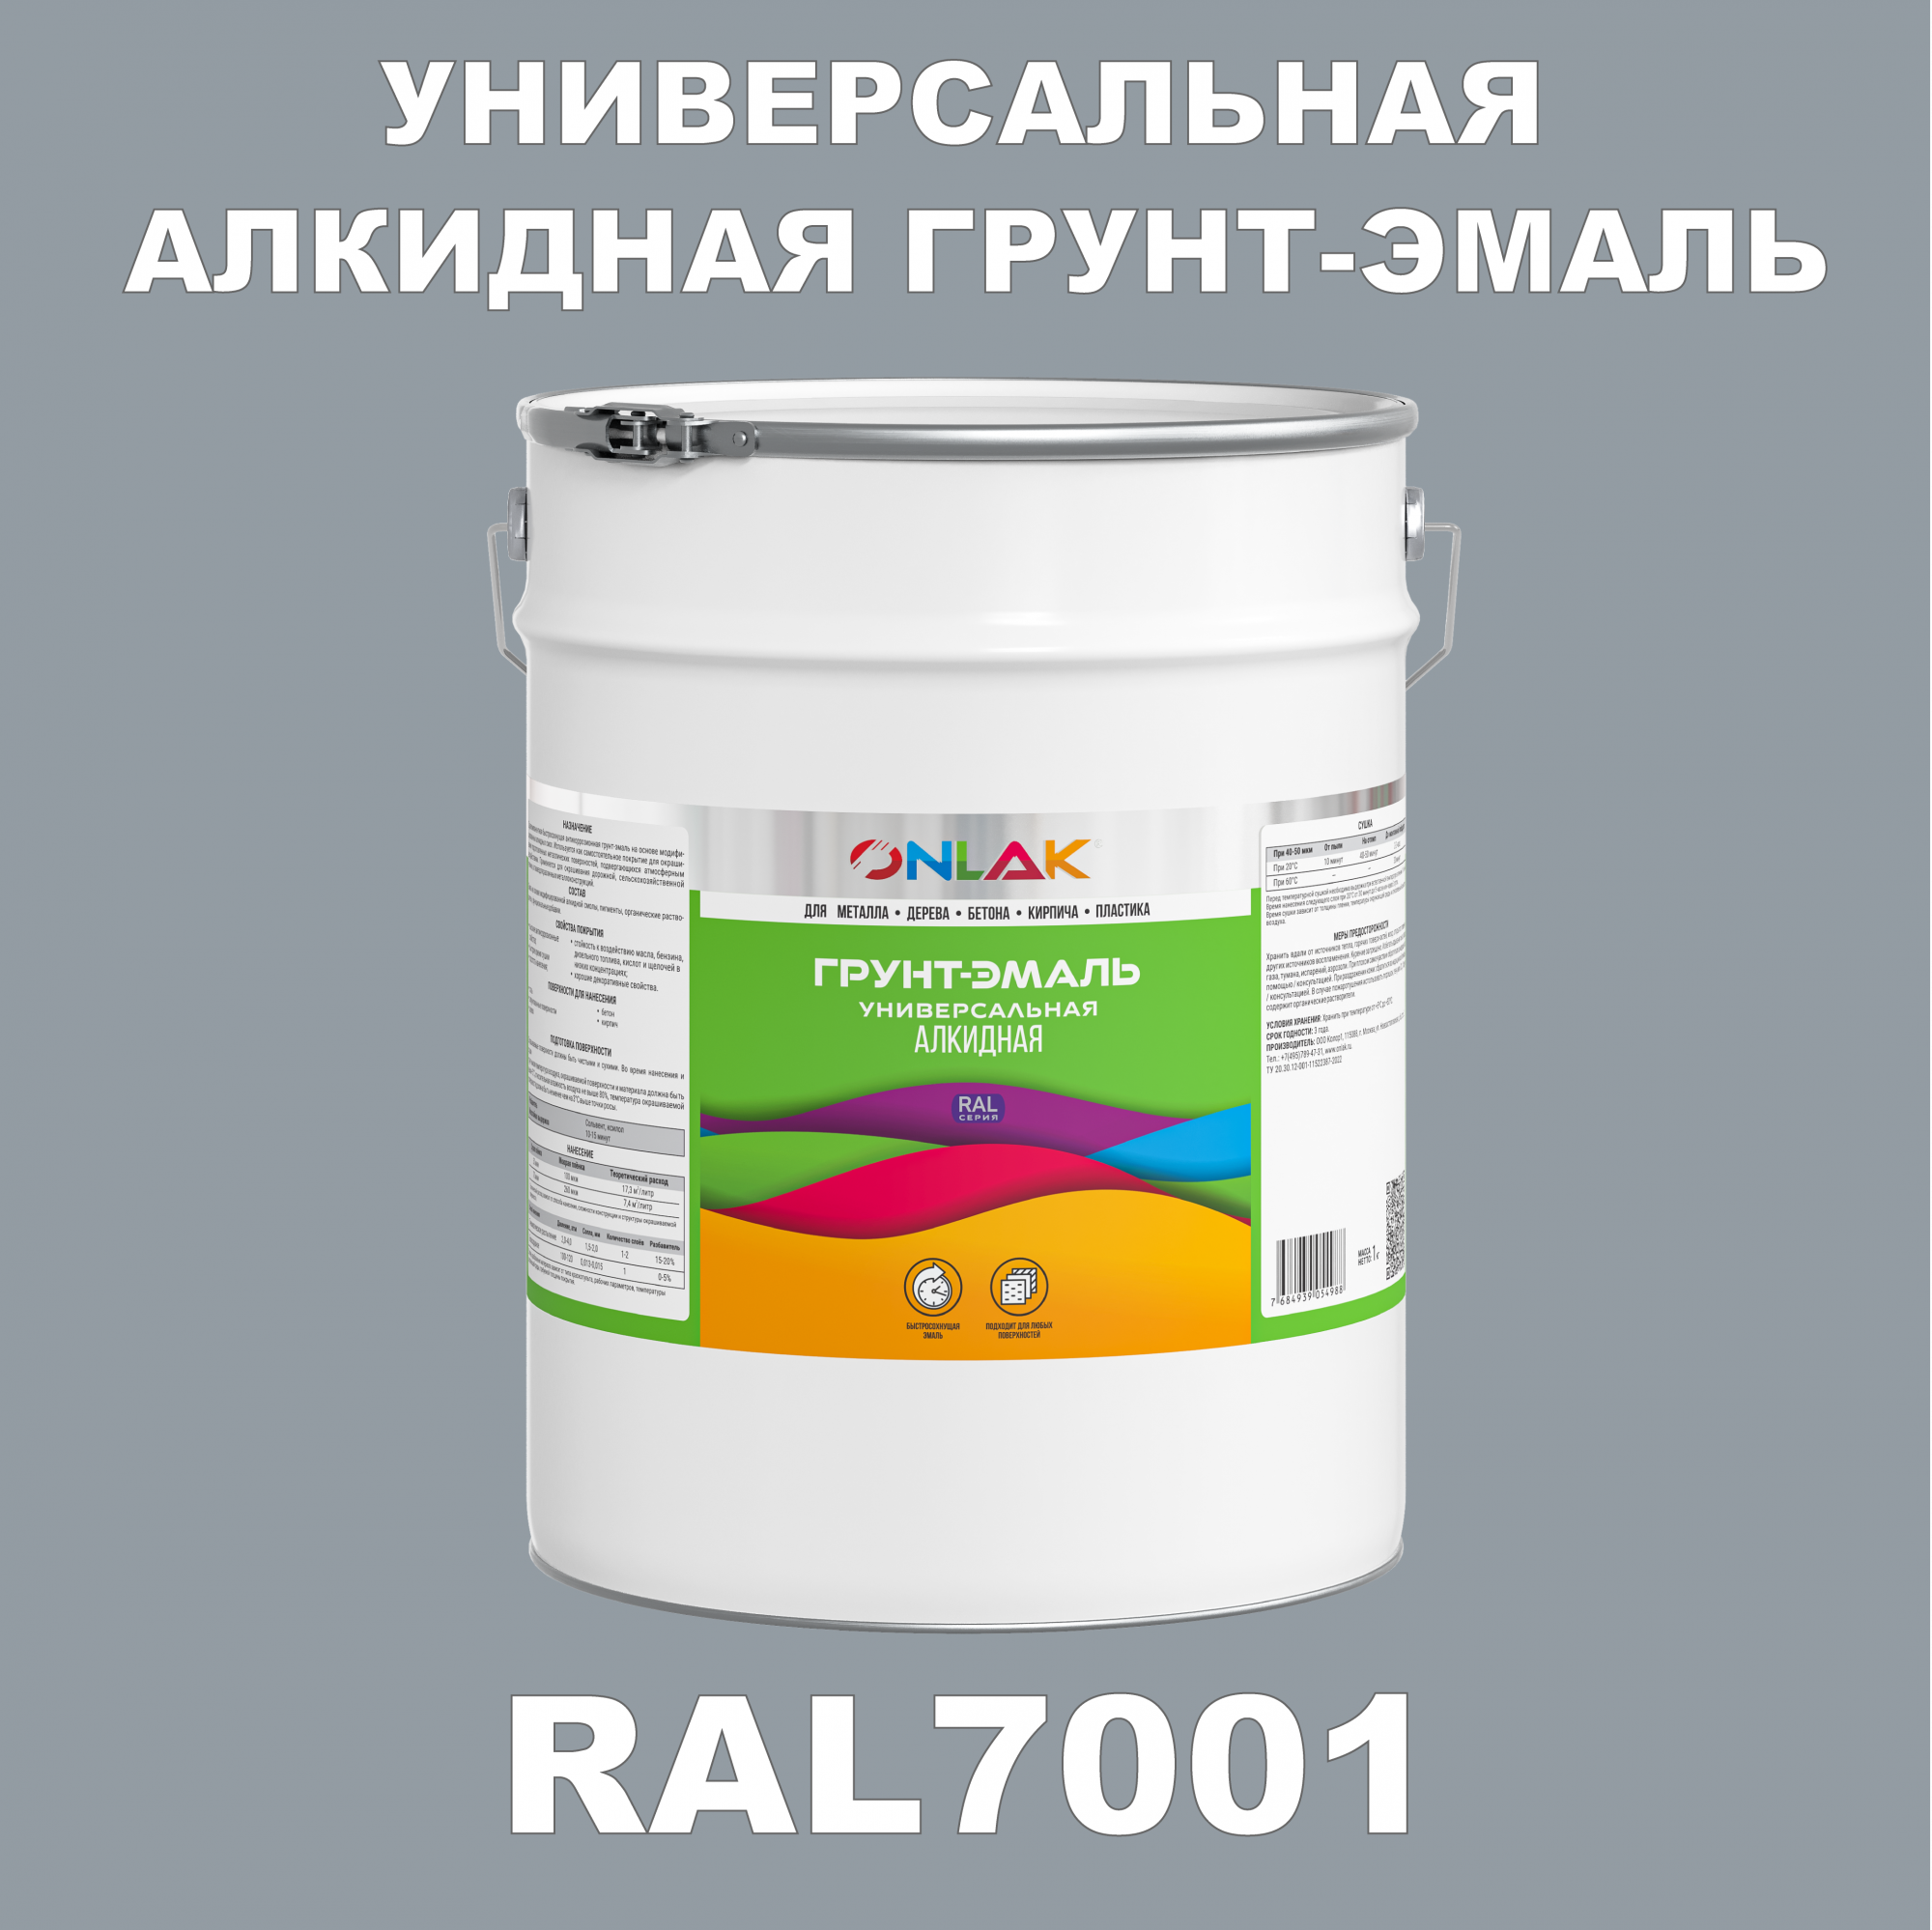 Грунт-эмаль ONLAK 1К RAL7001 антикоррозионная алкидная по металлу по ржавчине 20 кг грунт эмаль skladno по ржавчине алкидная желтая 1 8 кг